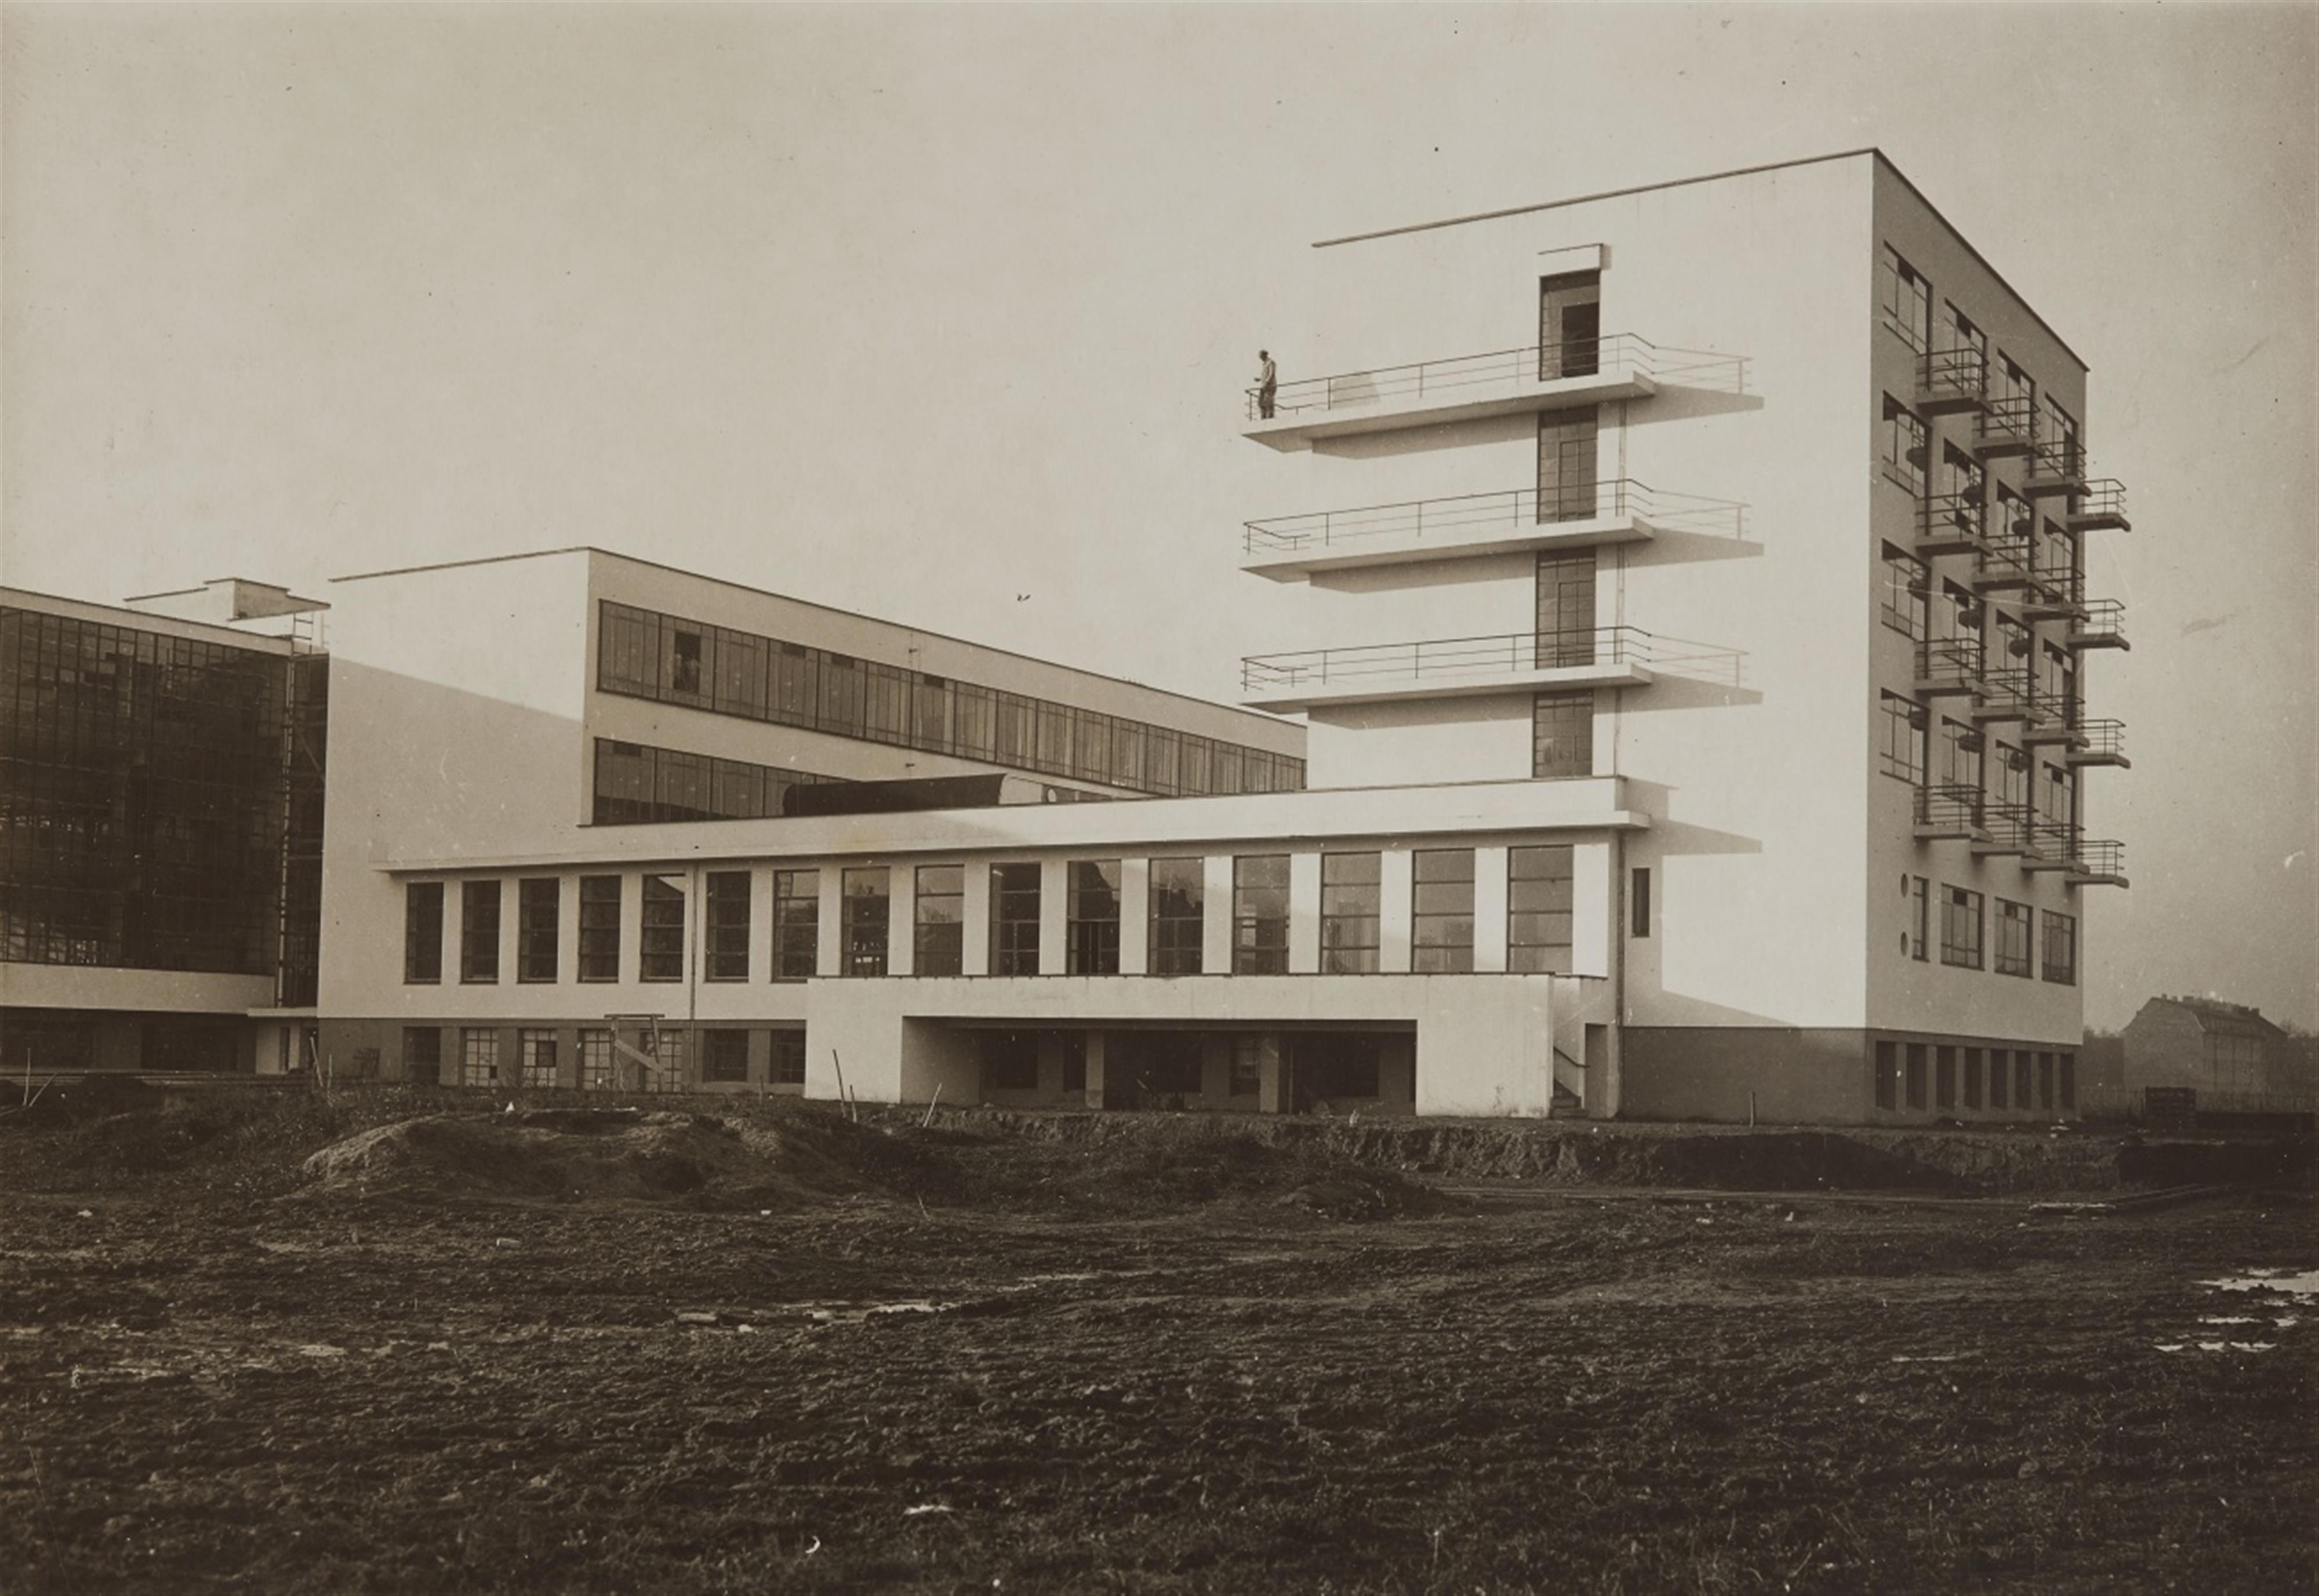 und Anonym - Südostansicht, Bauhaus Dessau - image-1